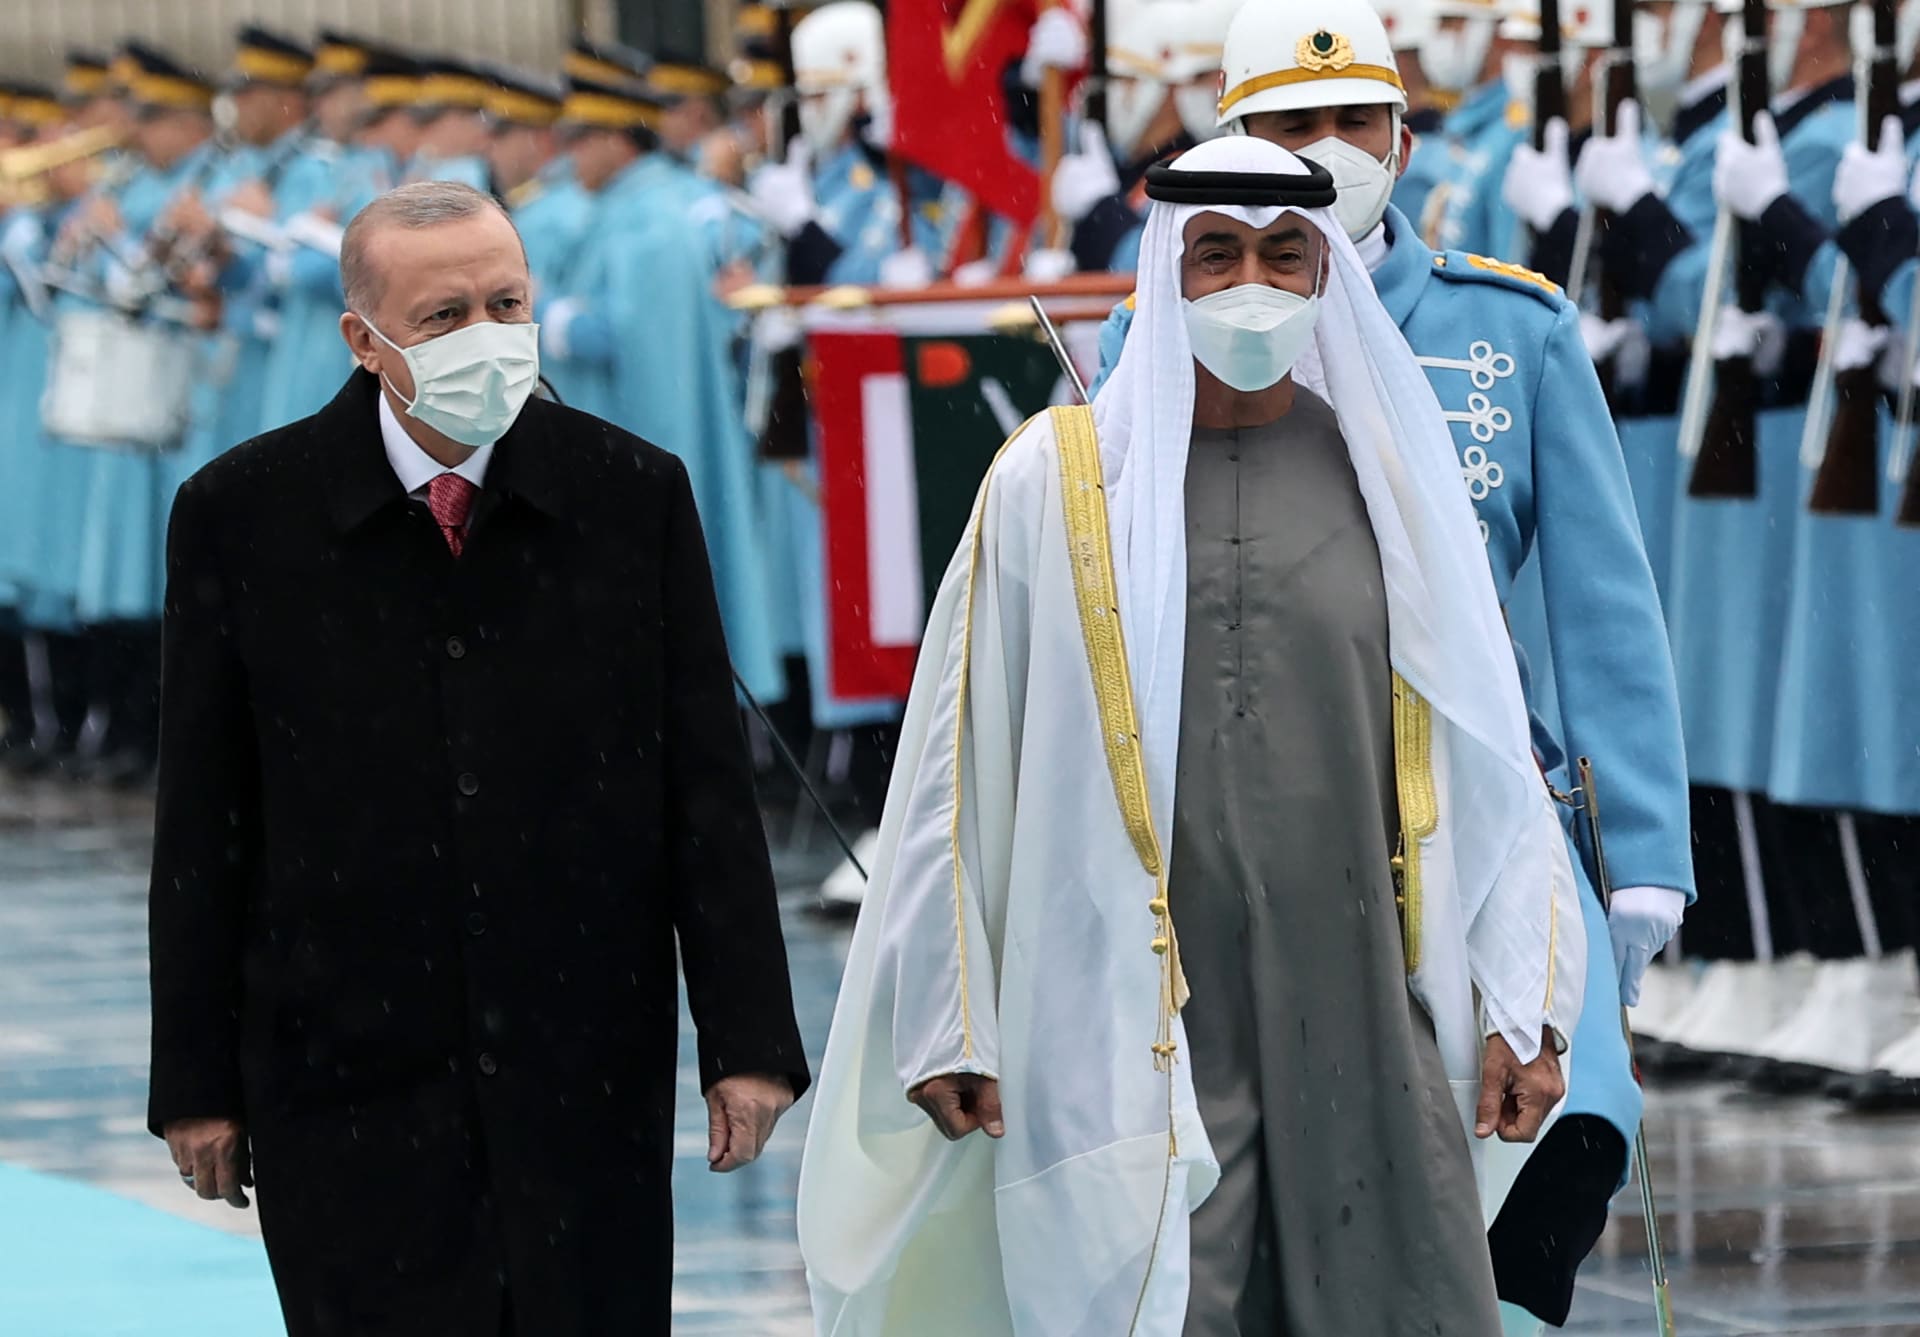 وصول الرئيس التركي إلى الإمارات للمرة الأولى مرة منذ ما يقرب من عقد